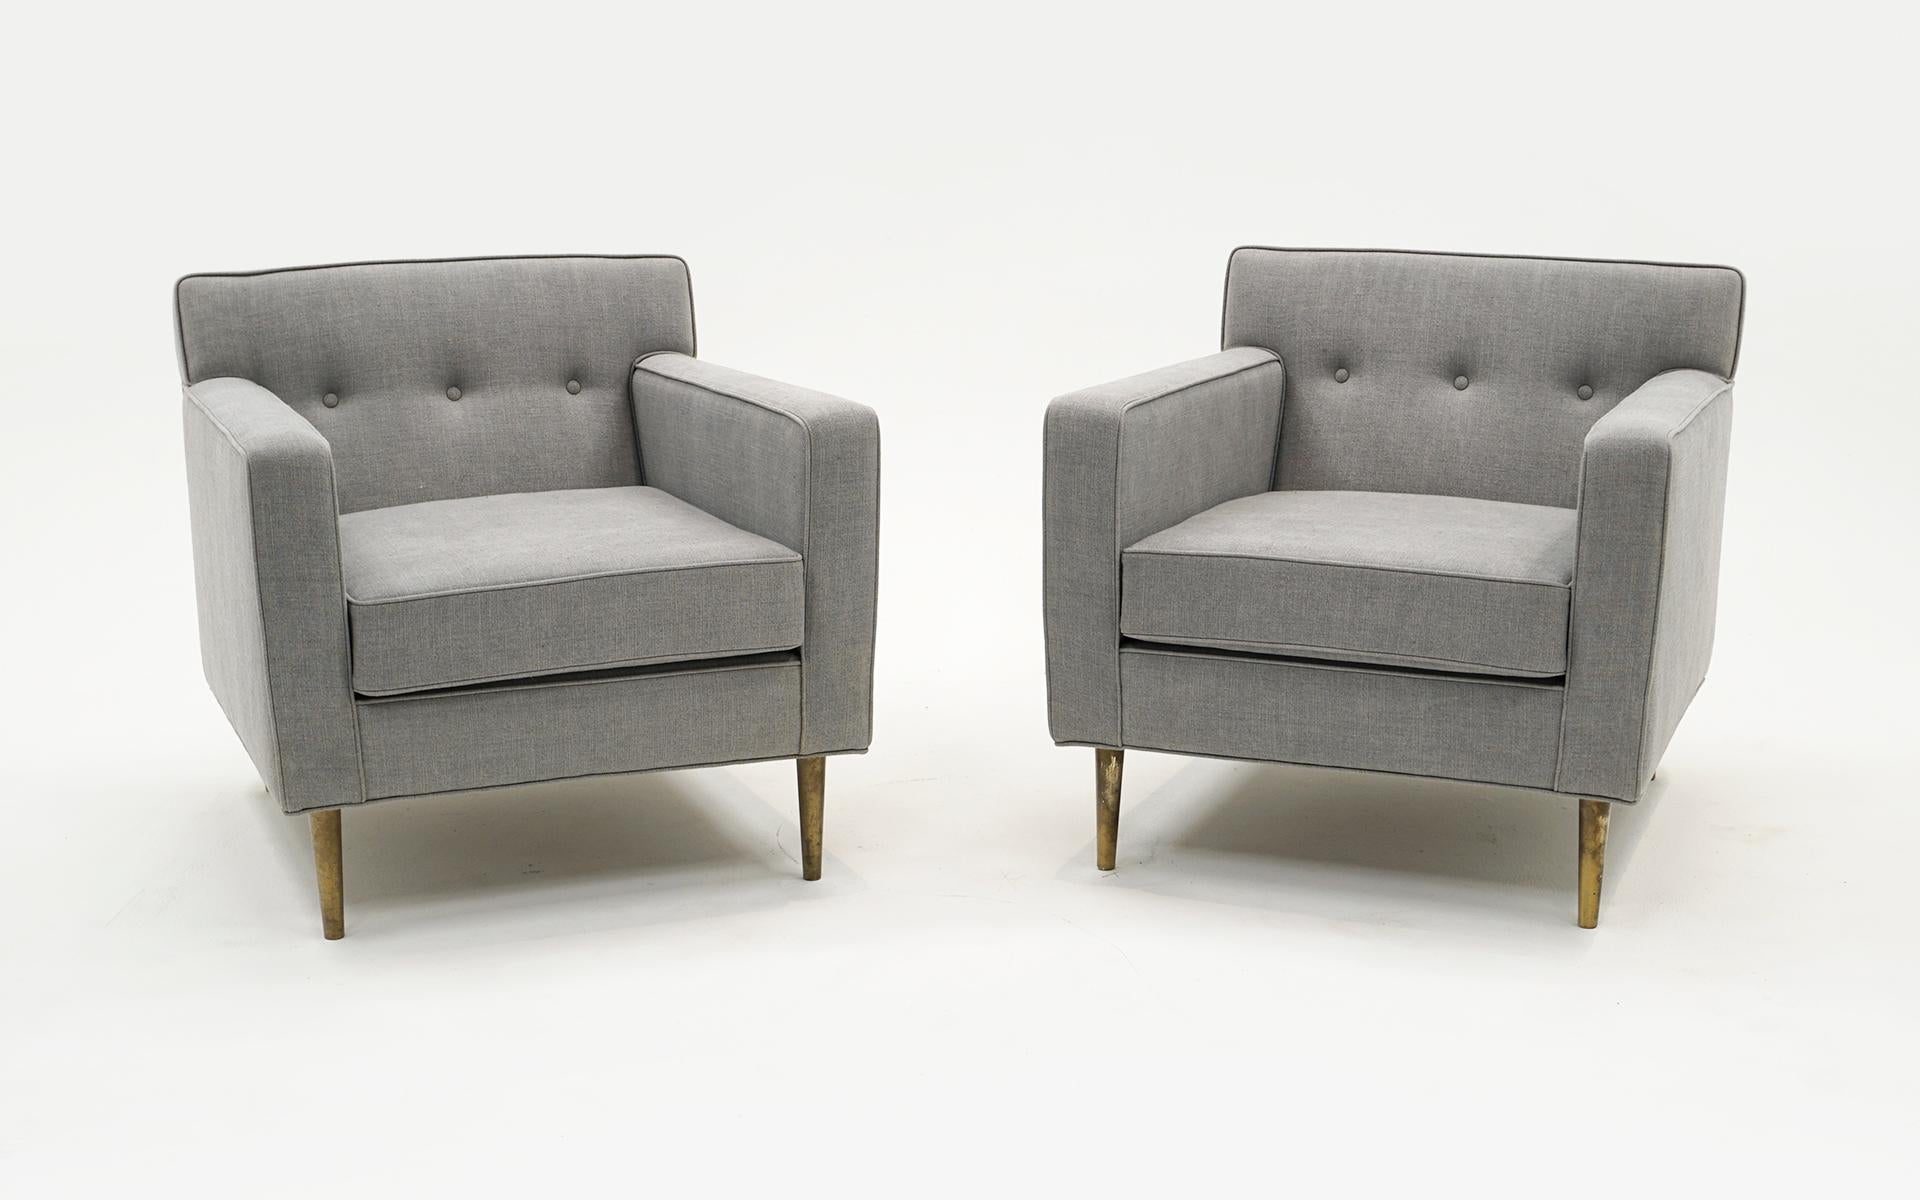 Magnifique paire de chaises longues conçues par Edward Wormley pour Dunbar, 1948.  Remeublé de façon experte dans un tissu de laine mélangée gris clair.  Les pieds d'origine sont en laiton massif.  La sellerie est en excellent état et les pieds en